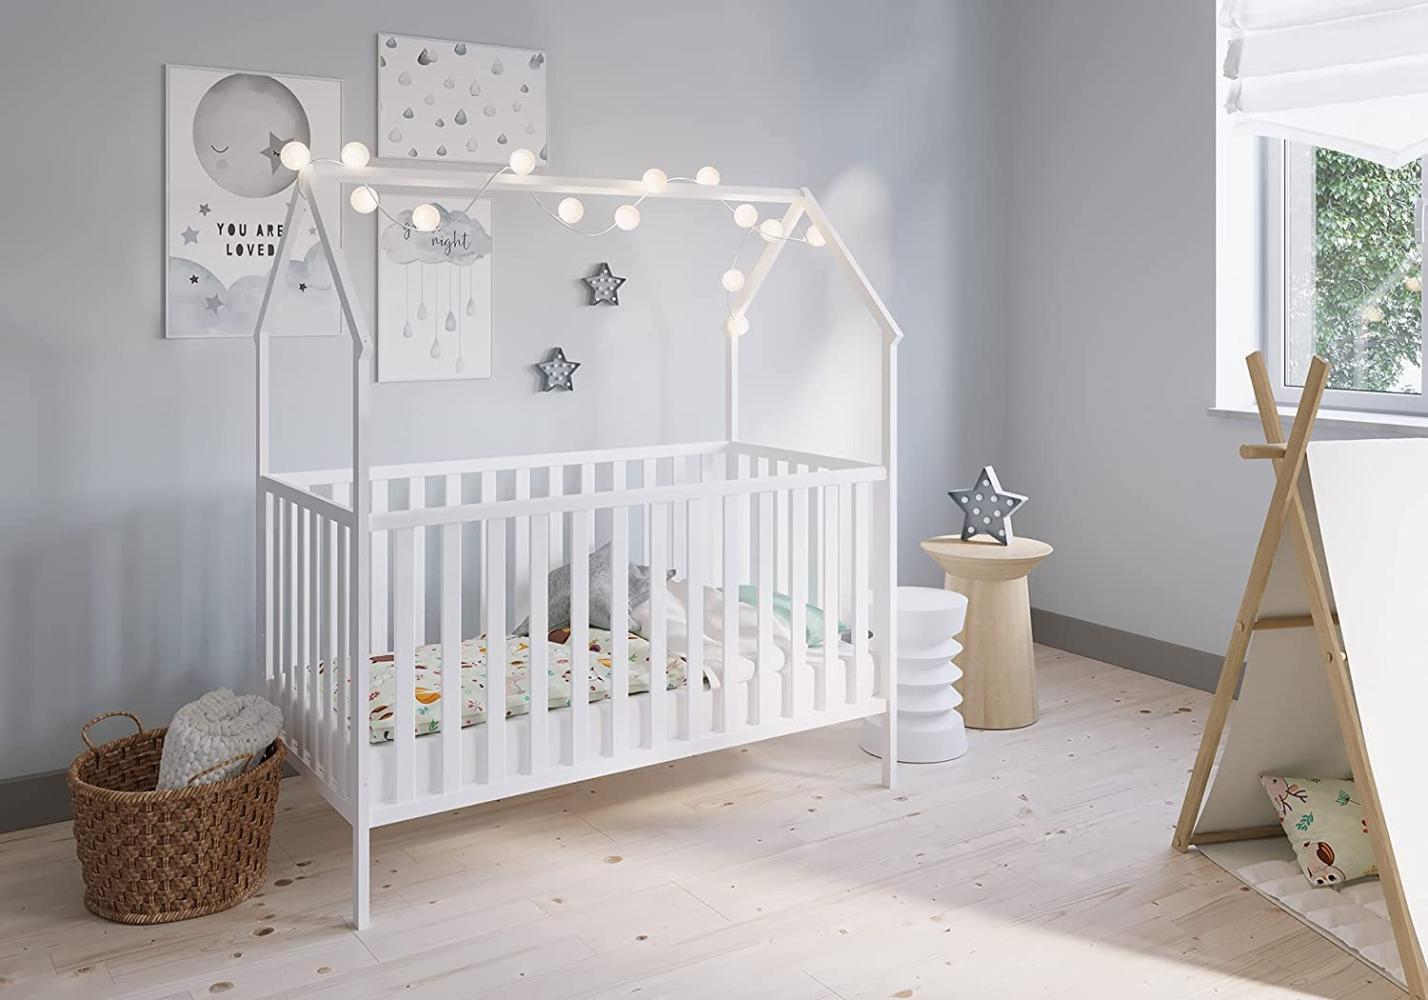 FabiMax 'Schlafmütze' Kinderbett, 70 x 140 cm, weiß, Kiefer massiv, 3-fach höhenverstellbar, umbaubar Bild 1